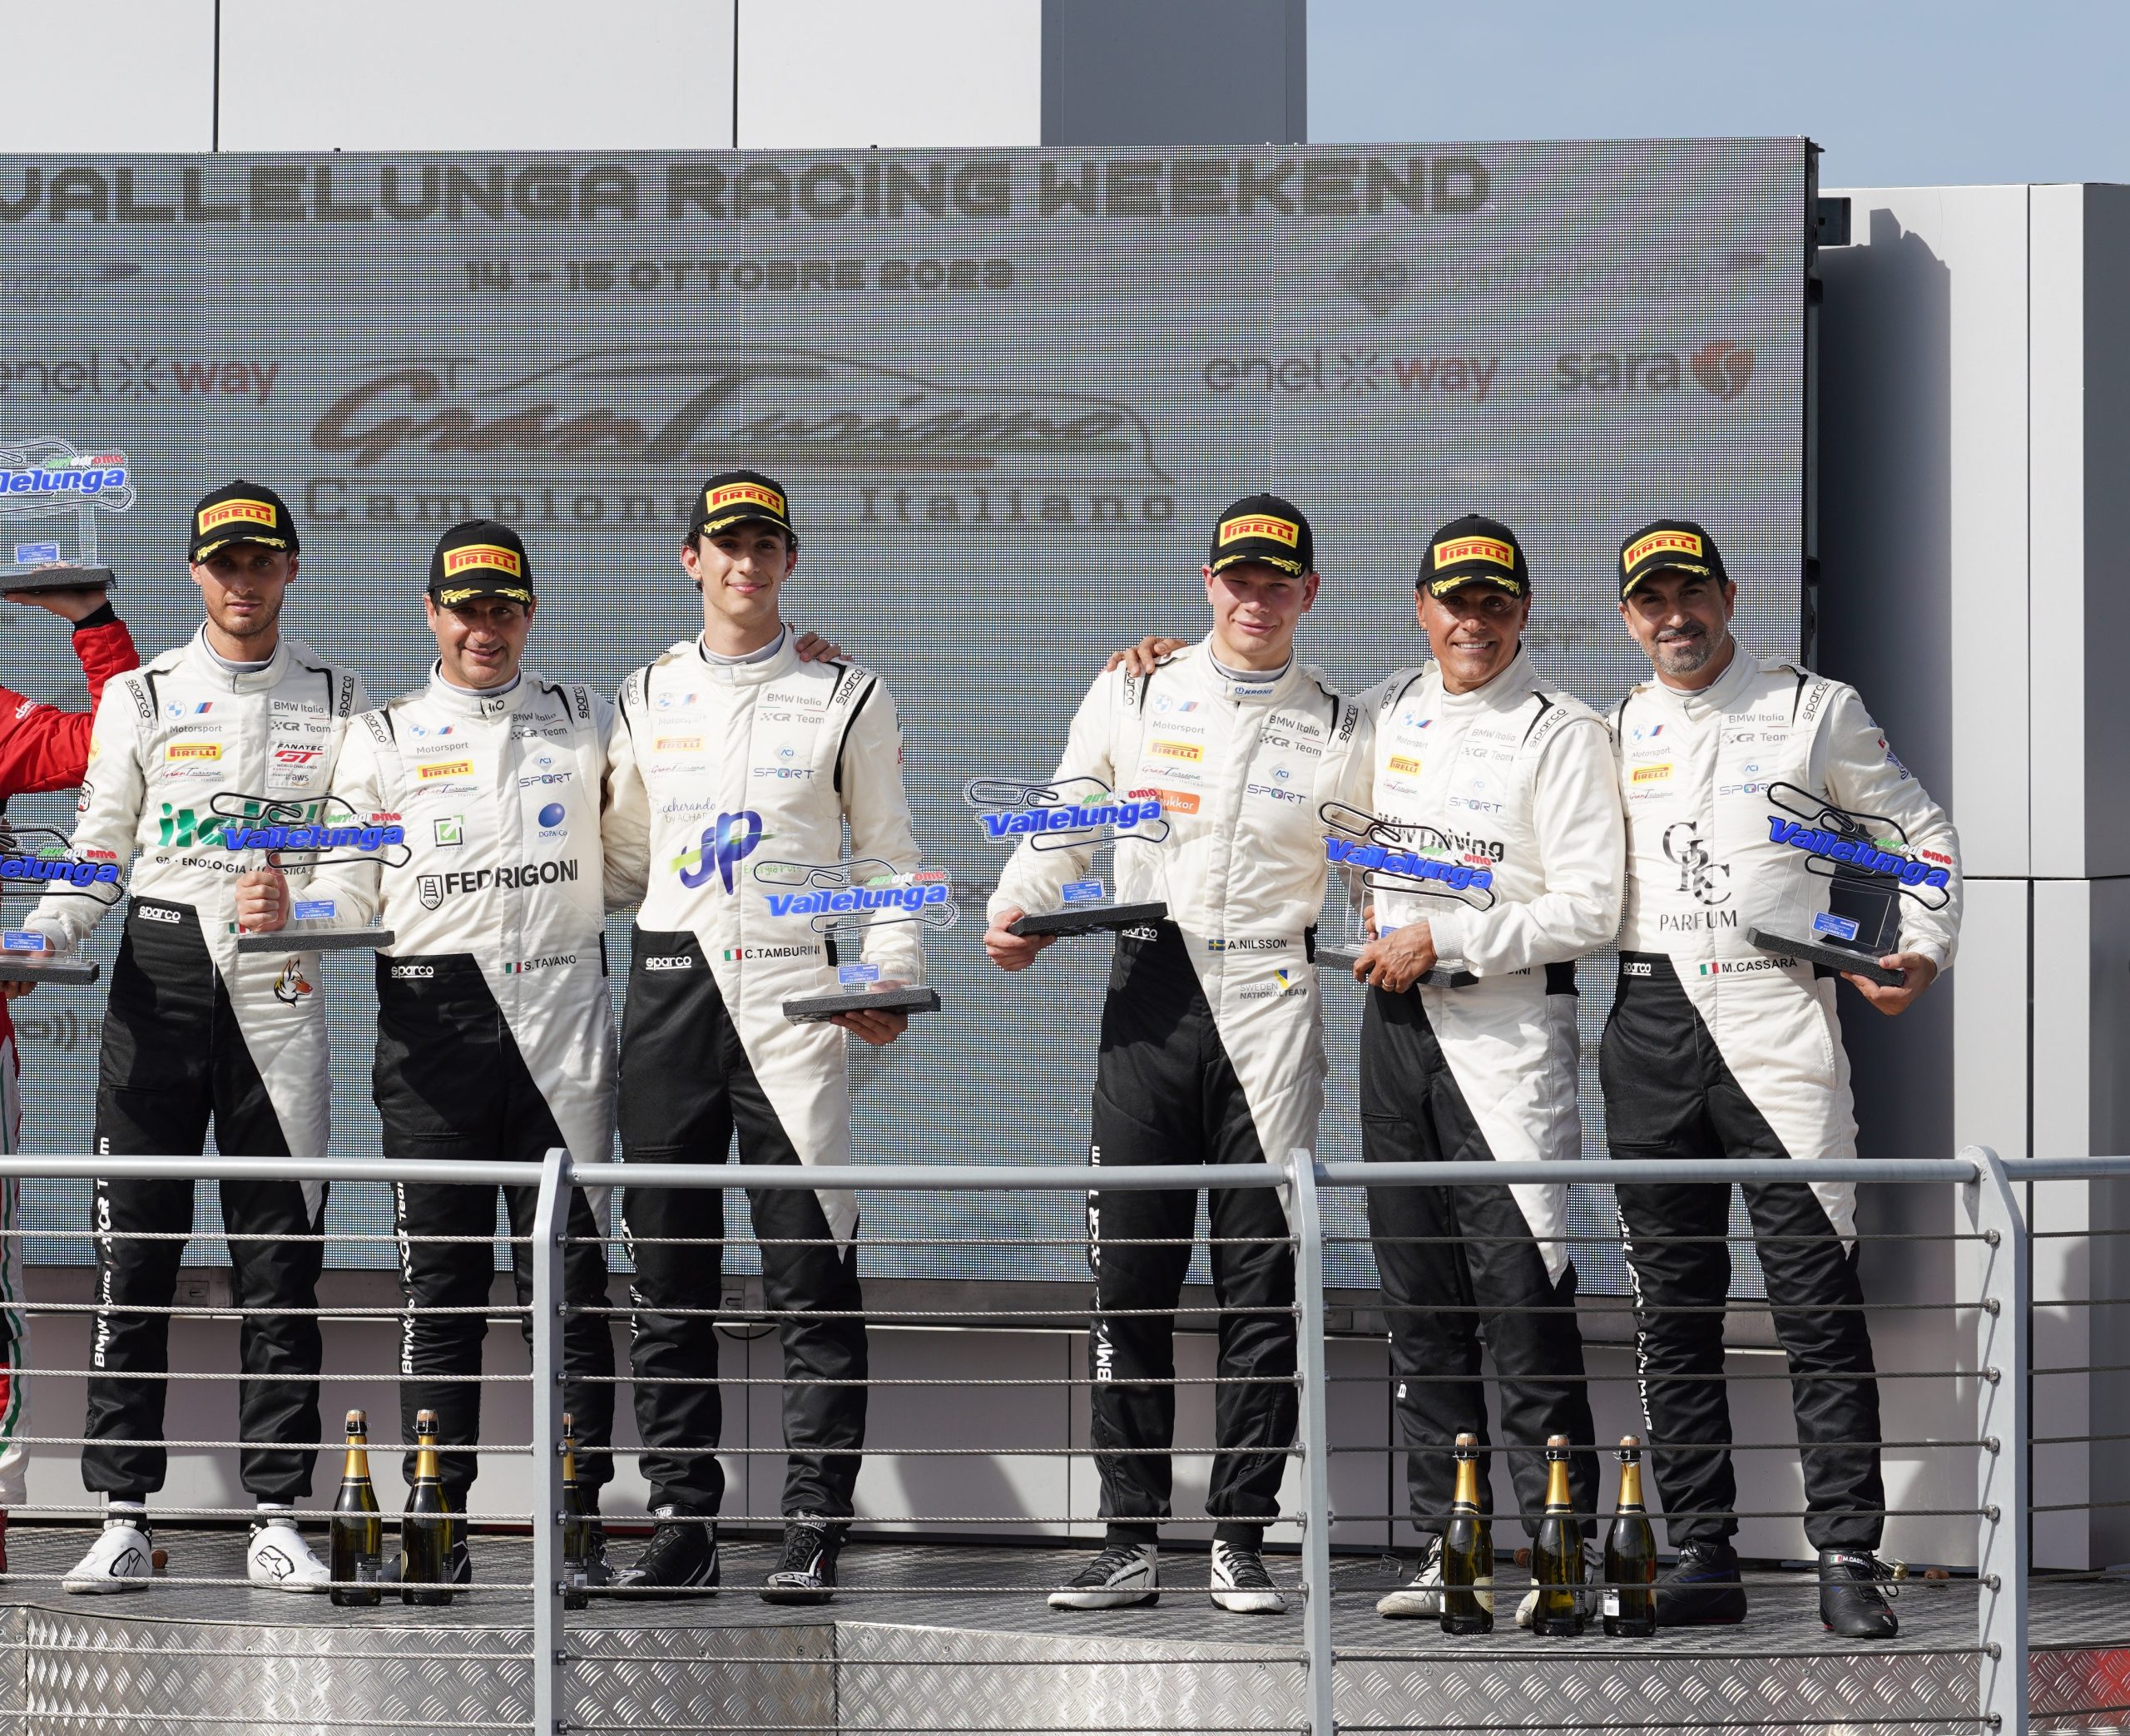 Ceccato Racing conquista il titolo PRO-AM nel Campionato Italiano Gran Turismo Endurance